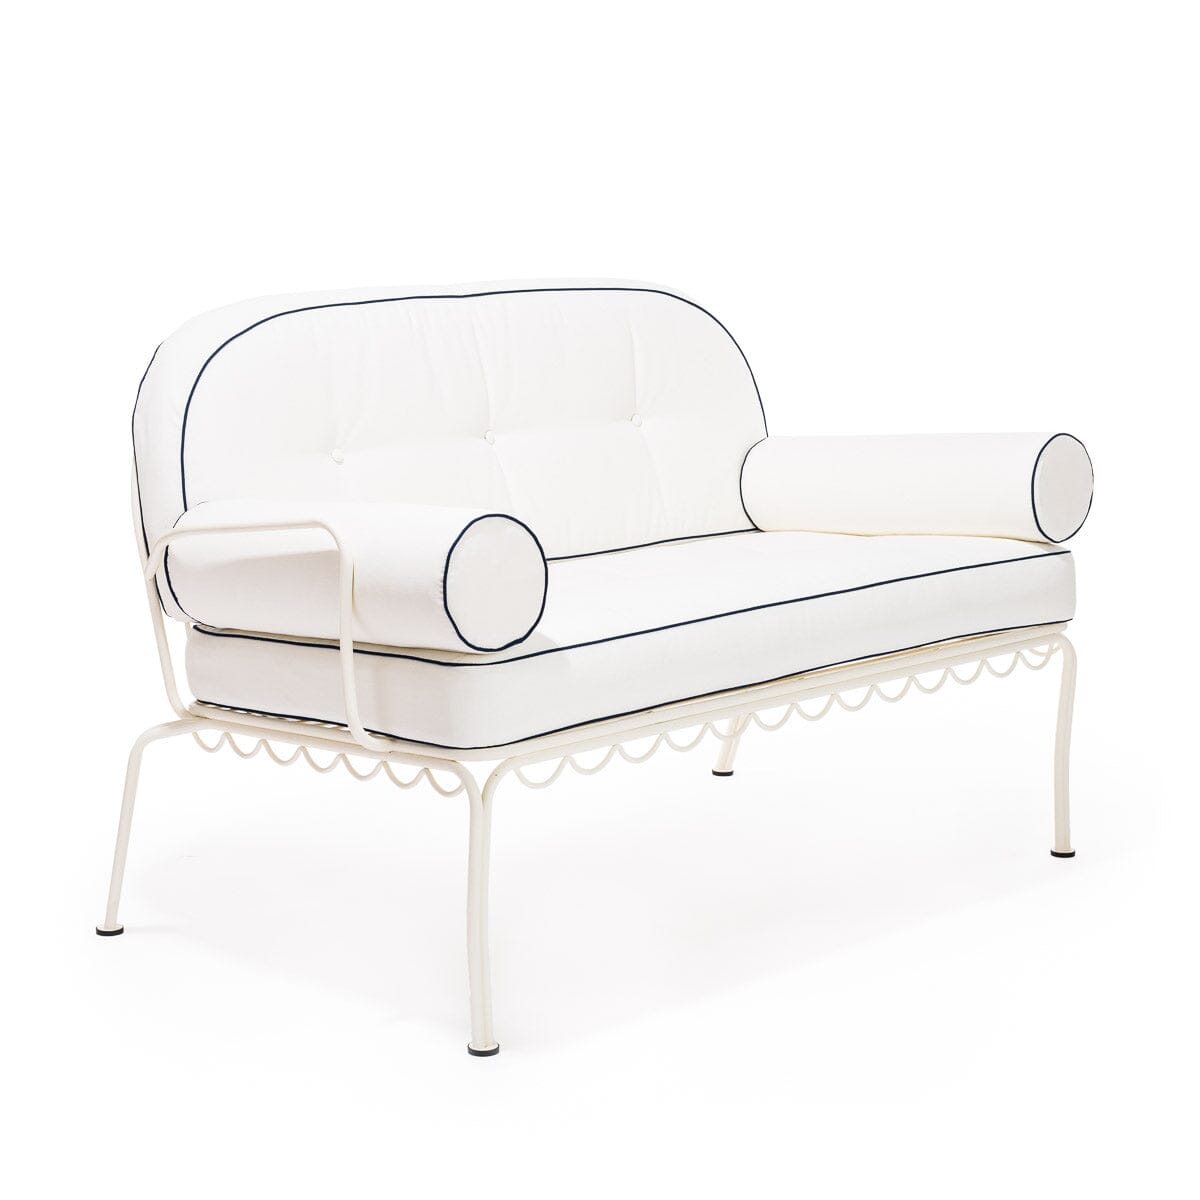 The Al Fresco Love Seat - Antique White Al Fresco Love Seat Business & Pleasure Co 